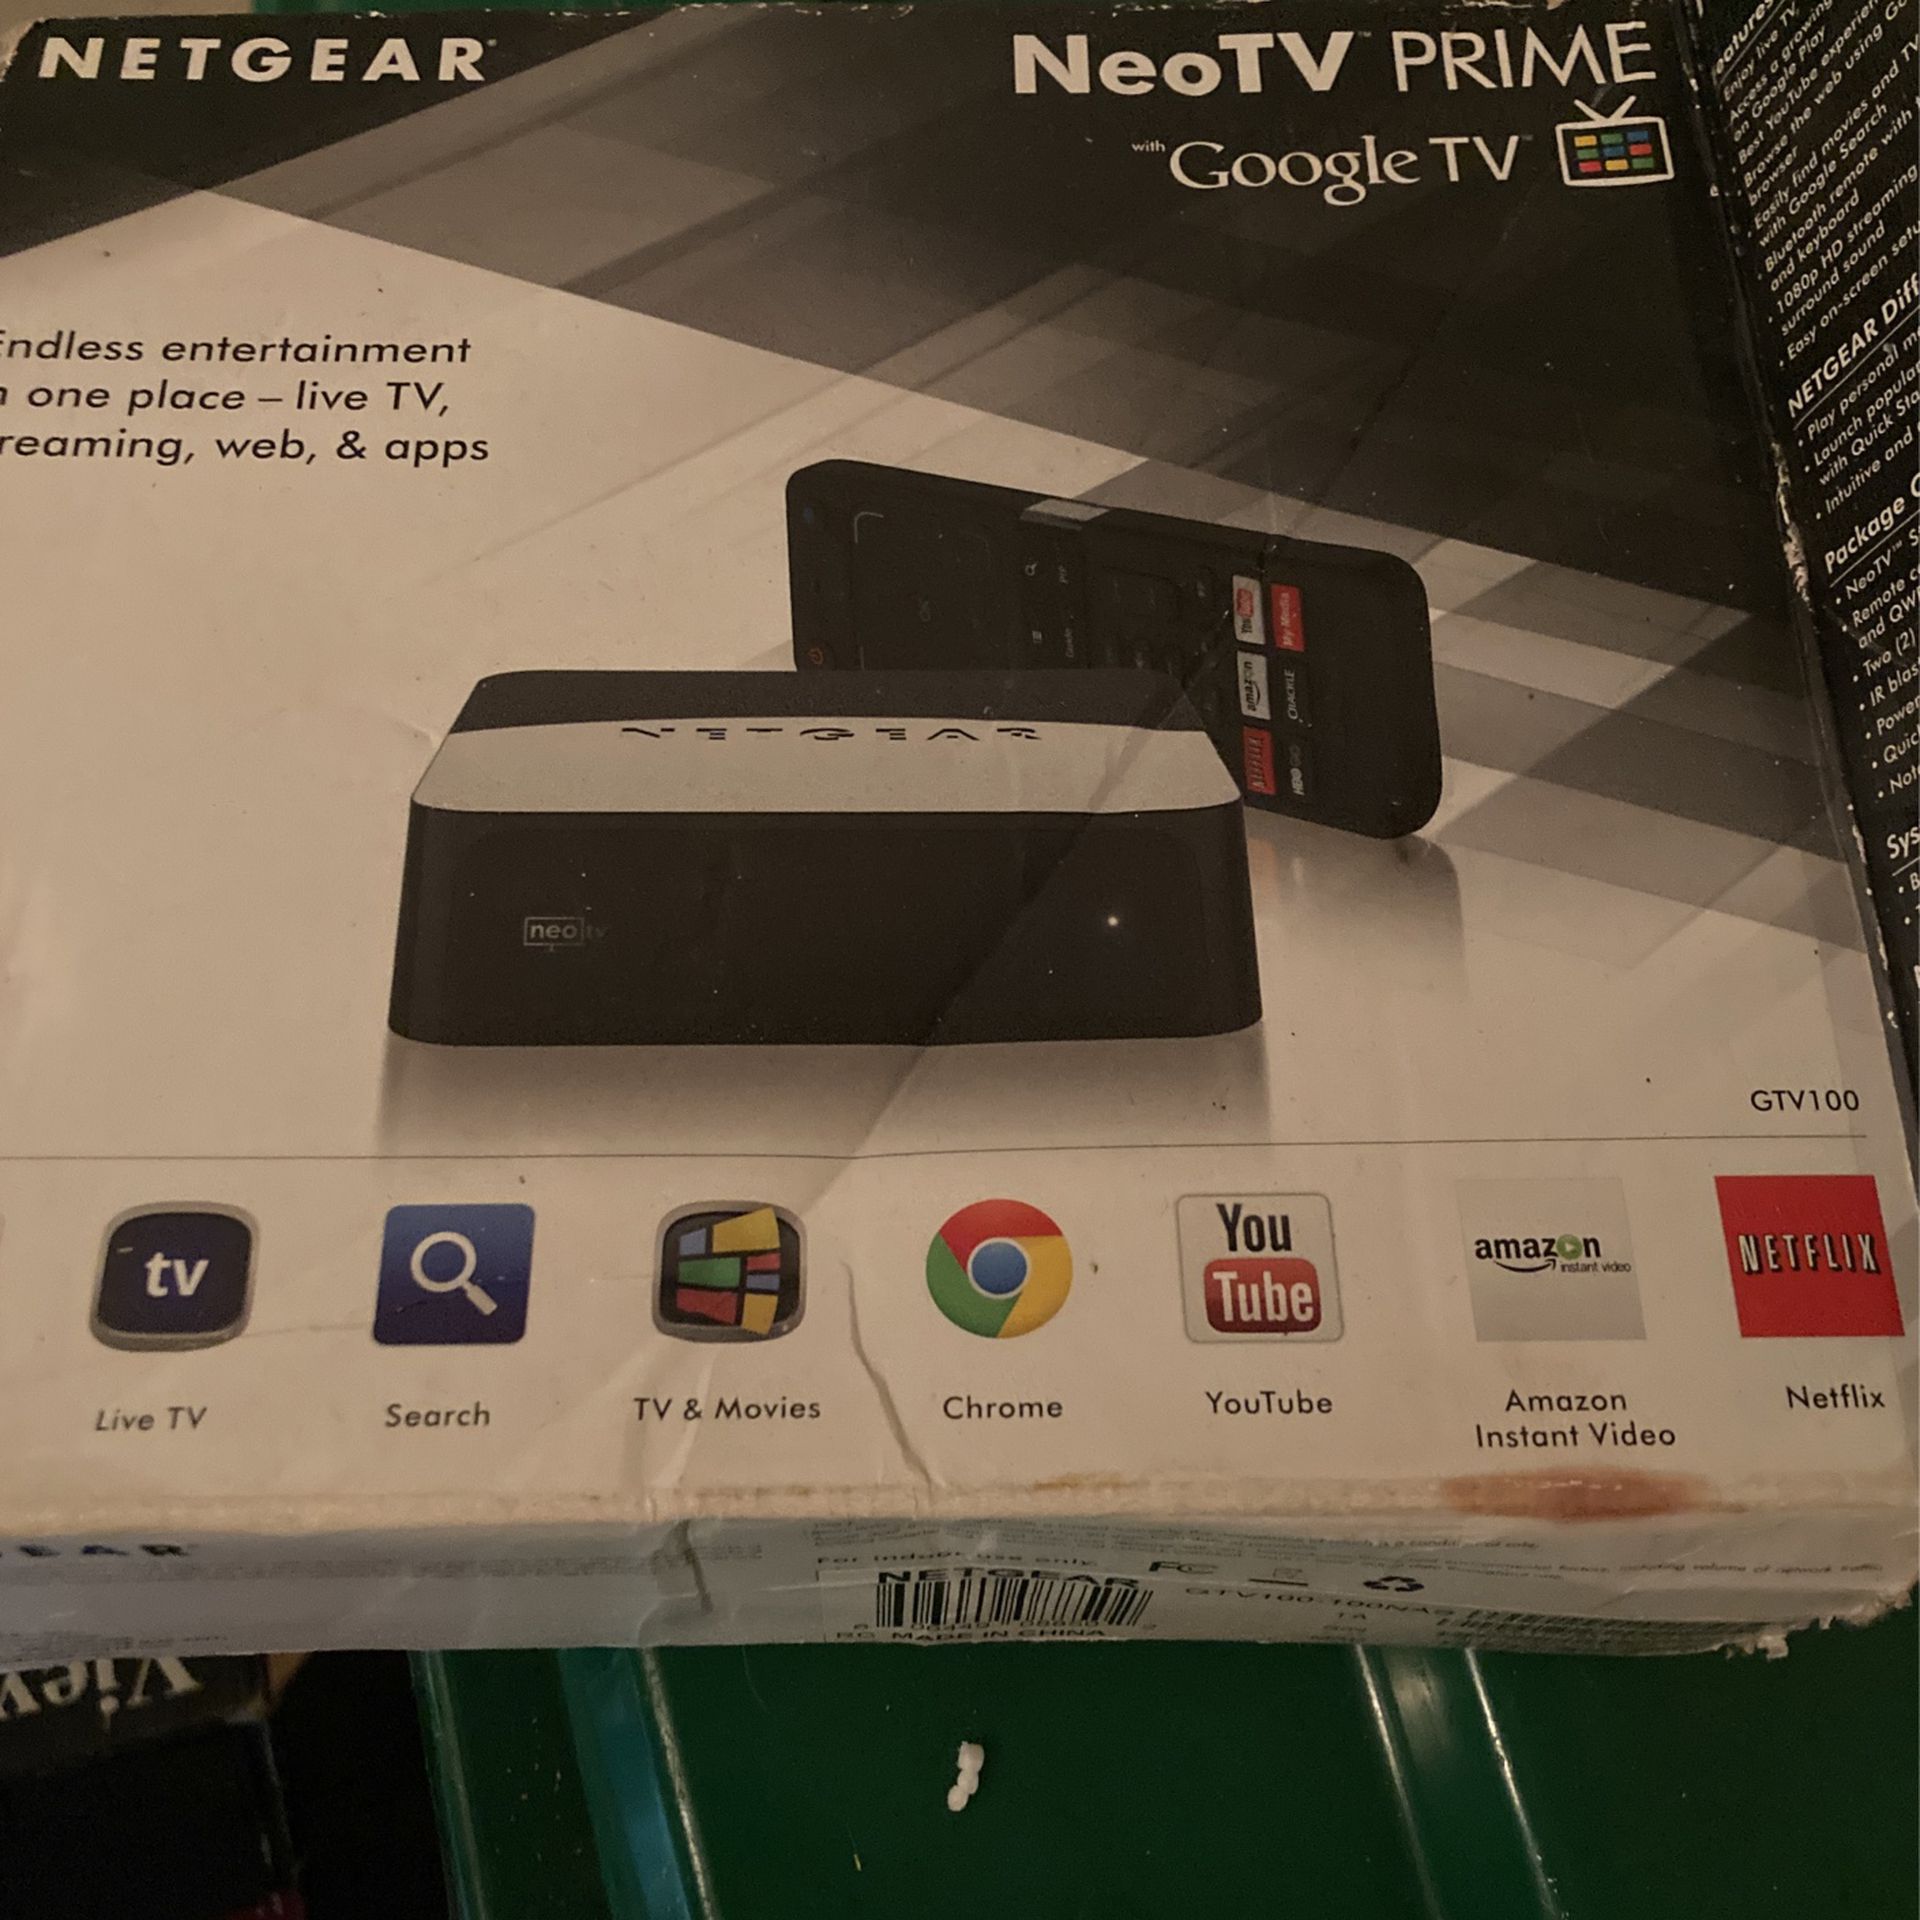 Netgear NeoTV Prime Google TV